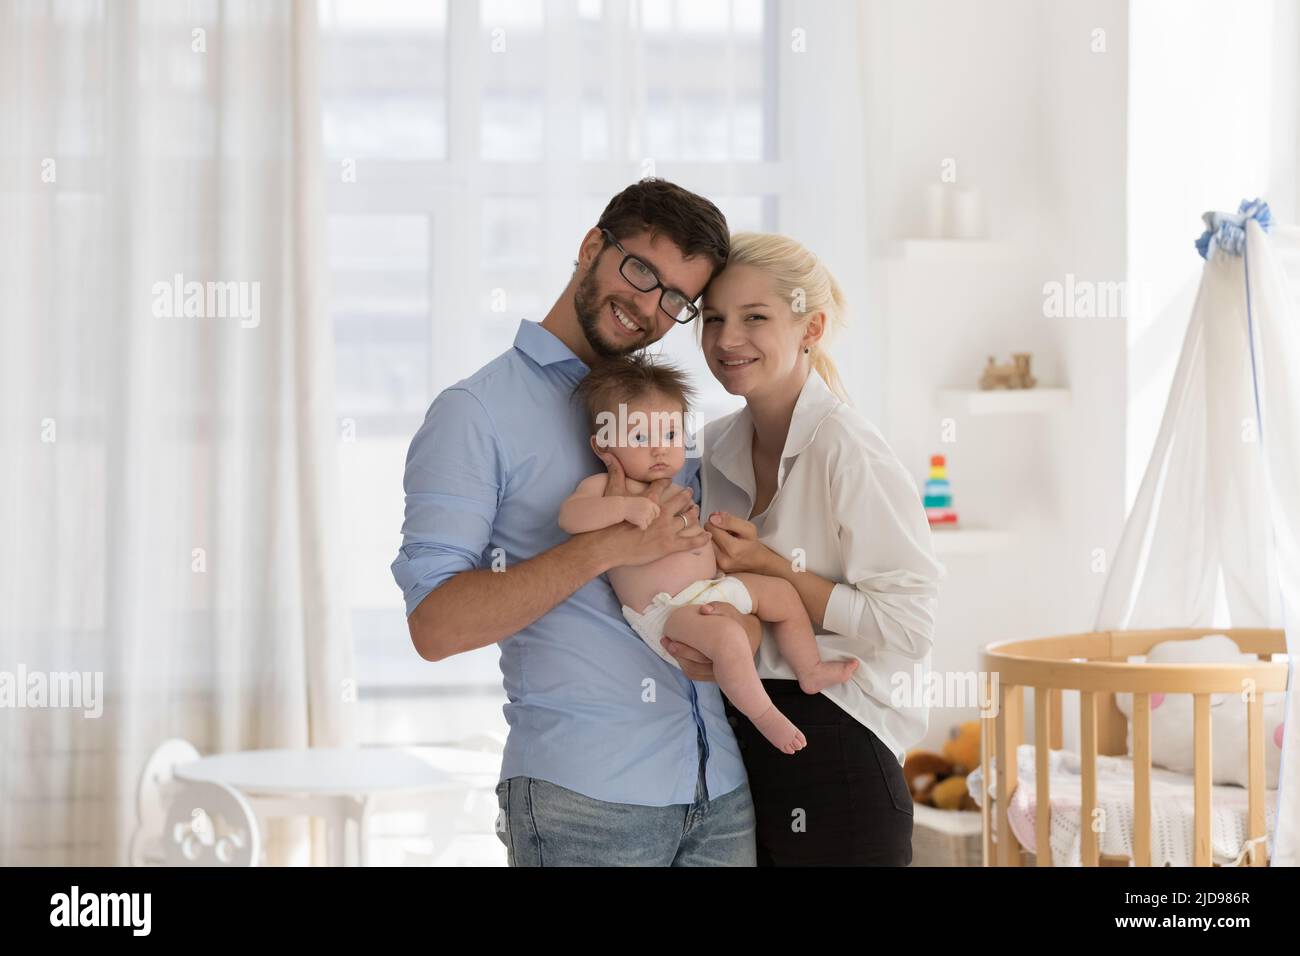 Junge Eltern halten sich an den Armen Baby lächelnd Blick auf die Kamera Stockfoto